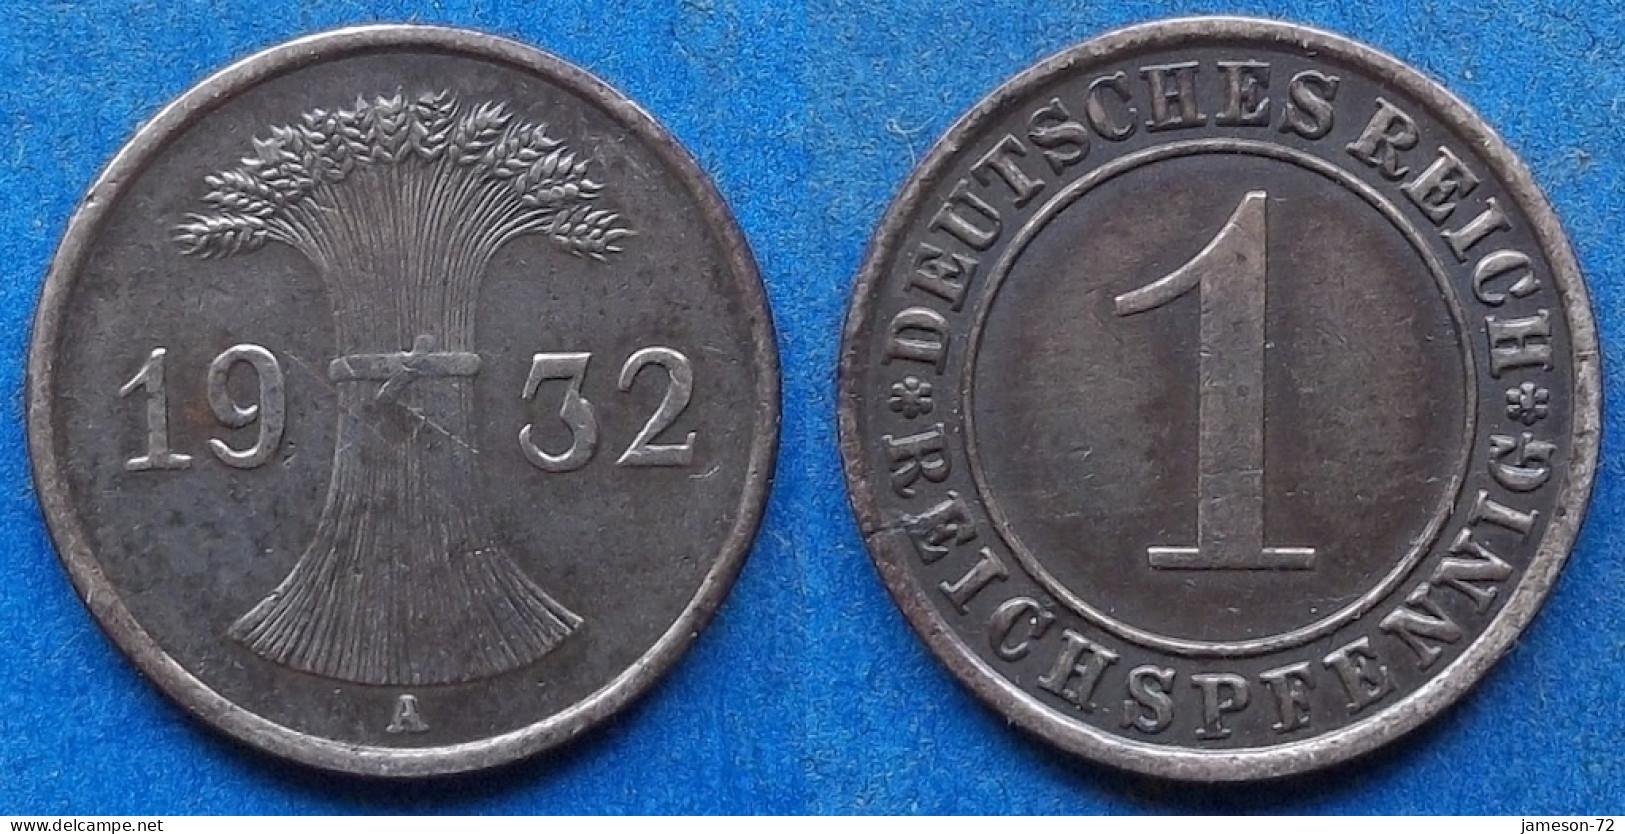 GERMANY - 1 Reichspfennig 1932 A KM# 37 Weimar Republic Reichsmark Coinage (1924-1938) - Edelweiss Coins - 1 Renten- & 1 Reichspfennig